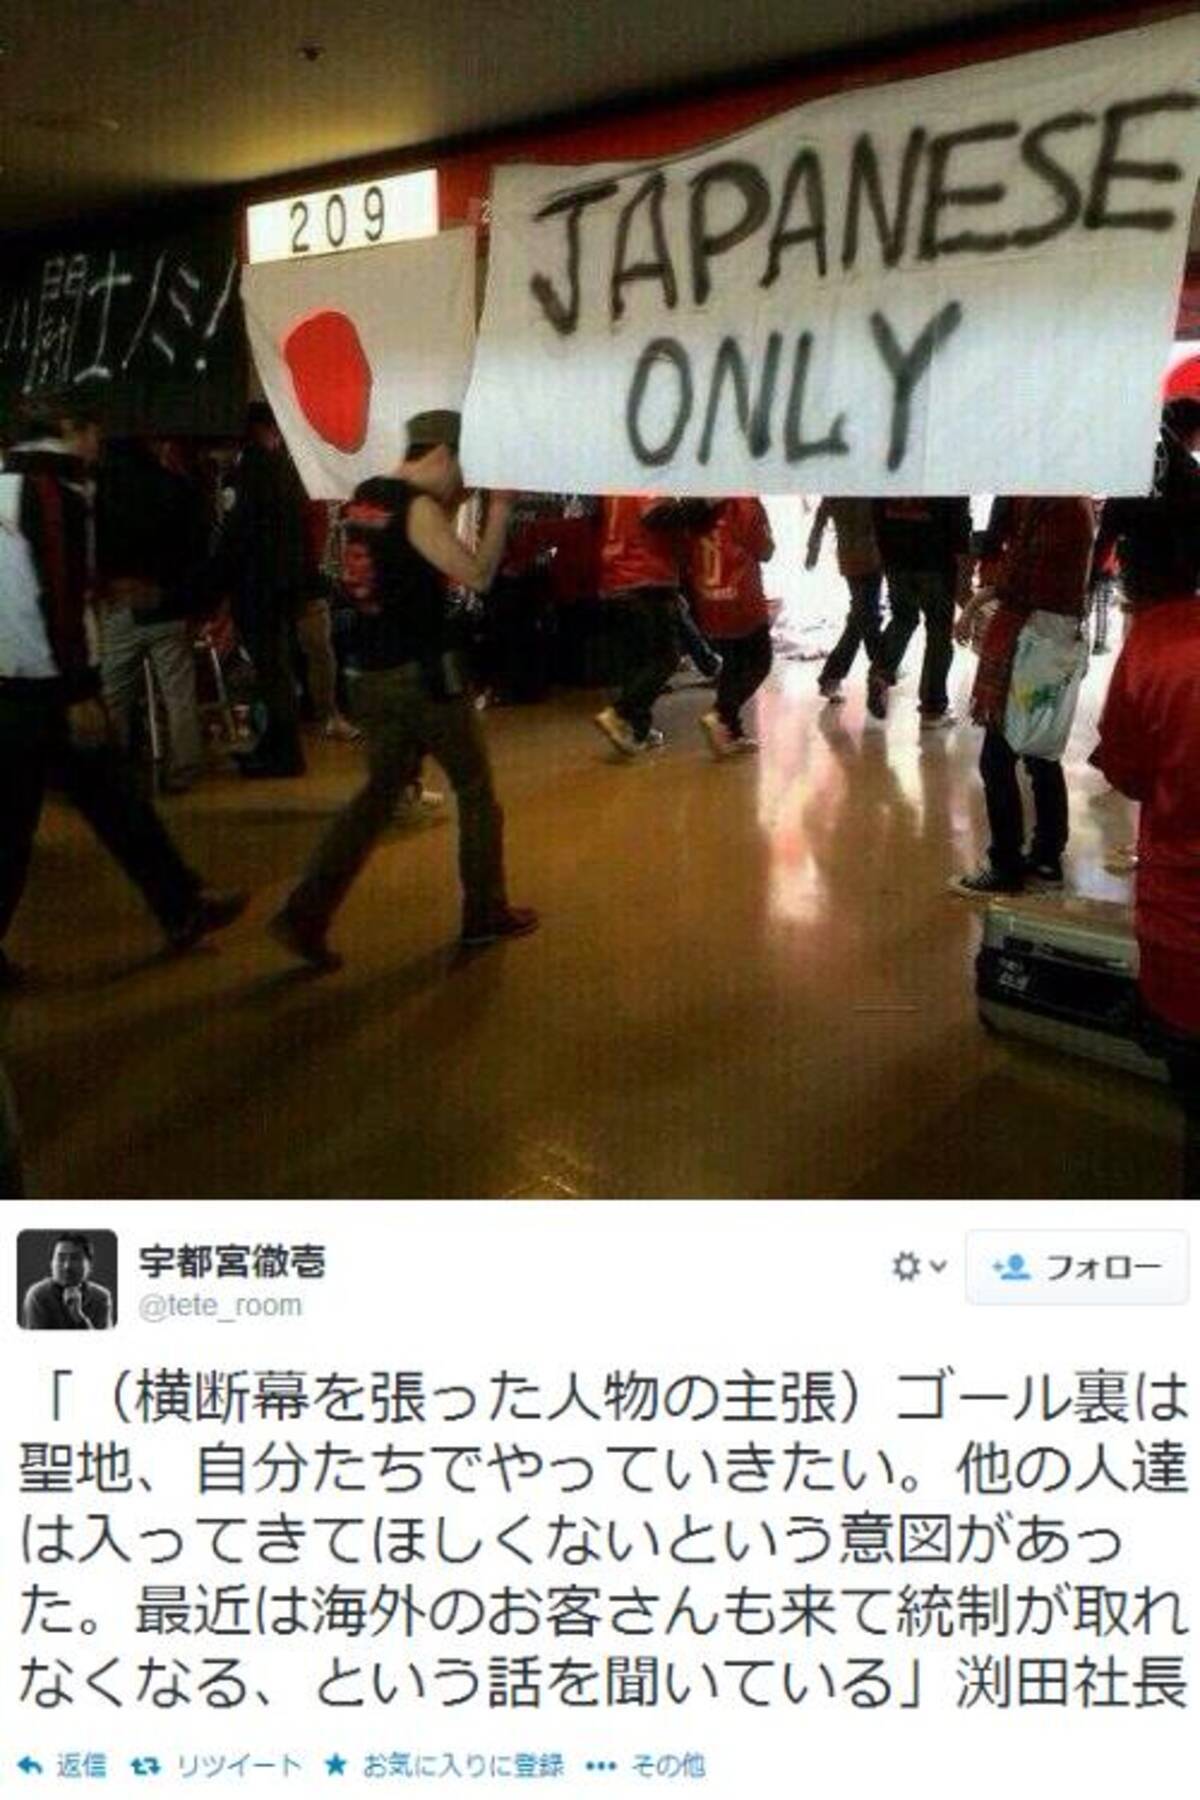 浦和レッズサポーターによる Japanese Only の横断幕は選手に対してではなく 外国人の観客に対して出したもの と差別的意図を認める 14年3月13日 エキサイトニュース